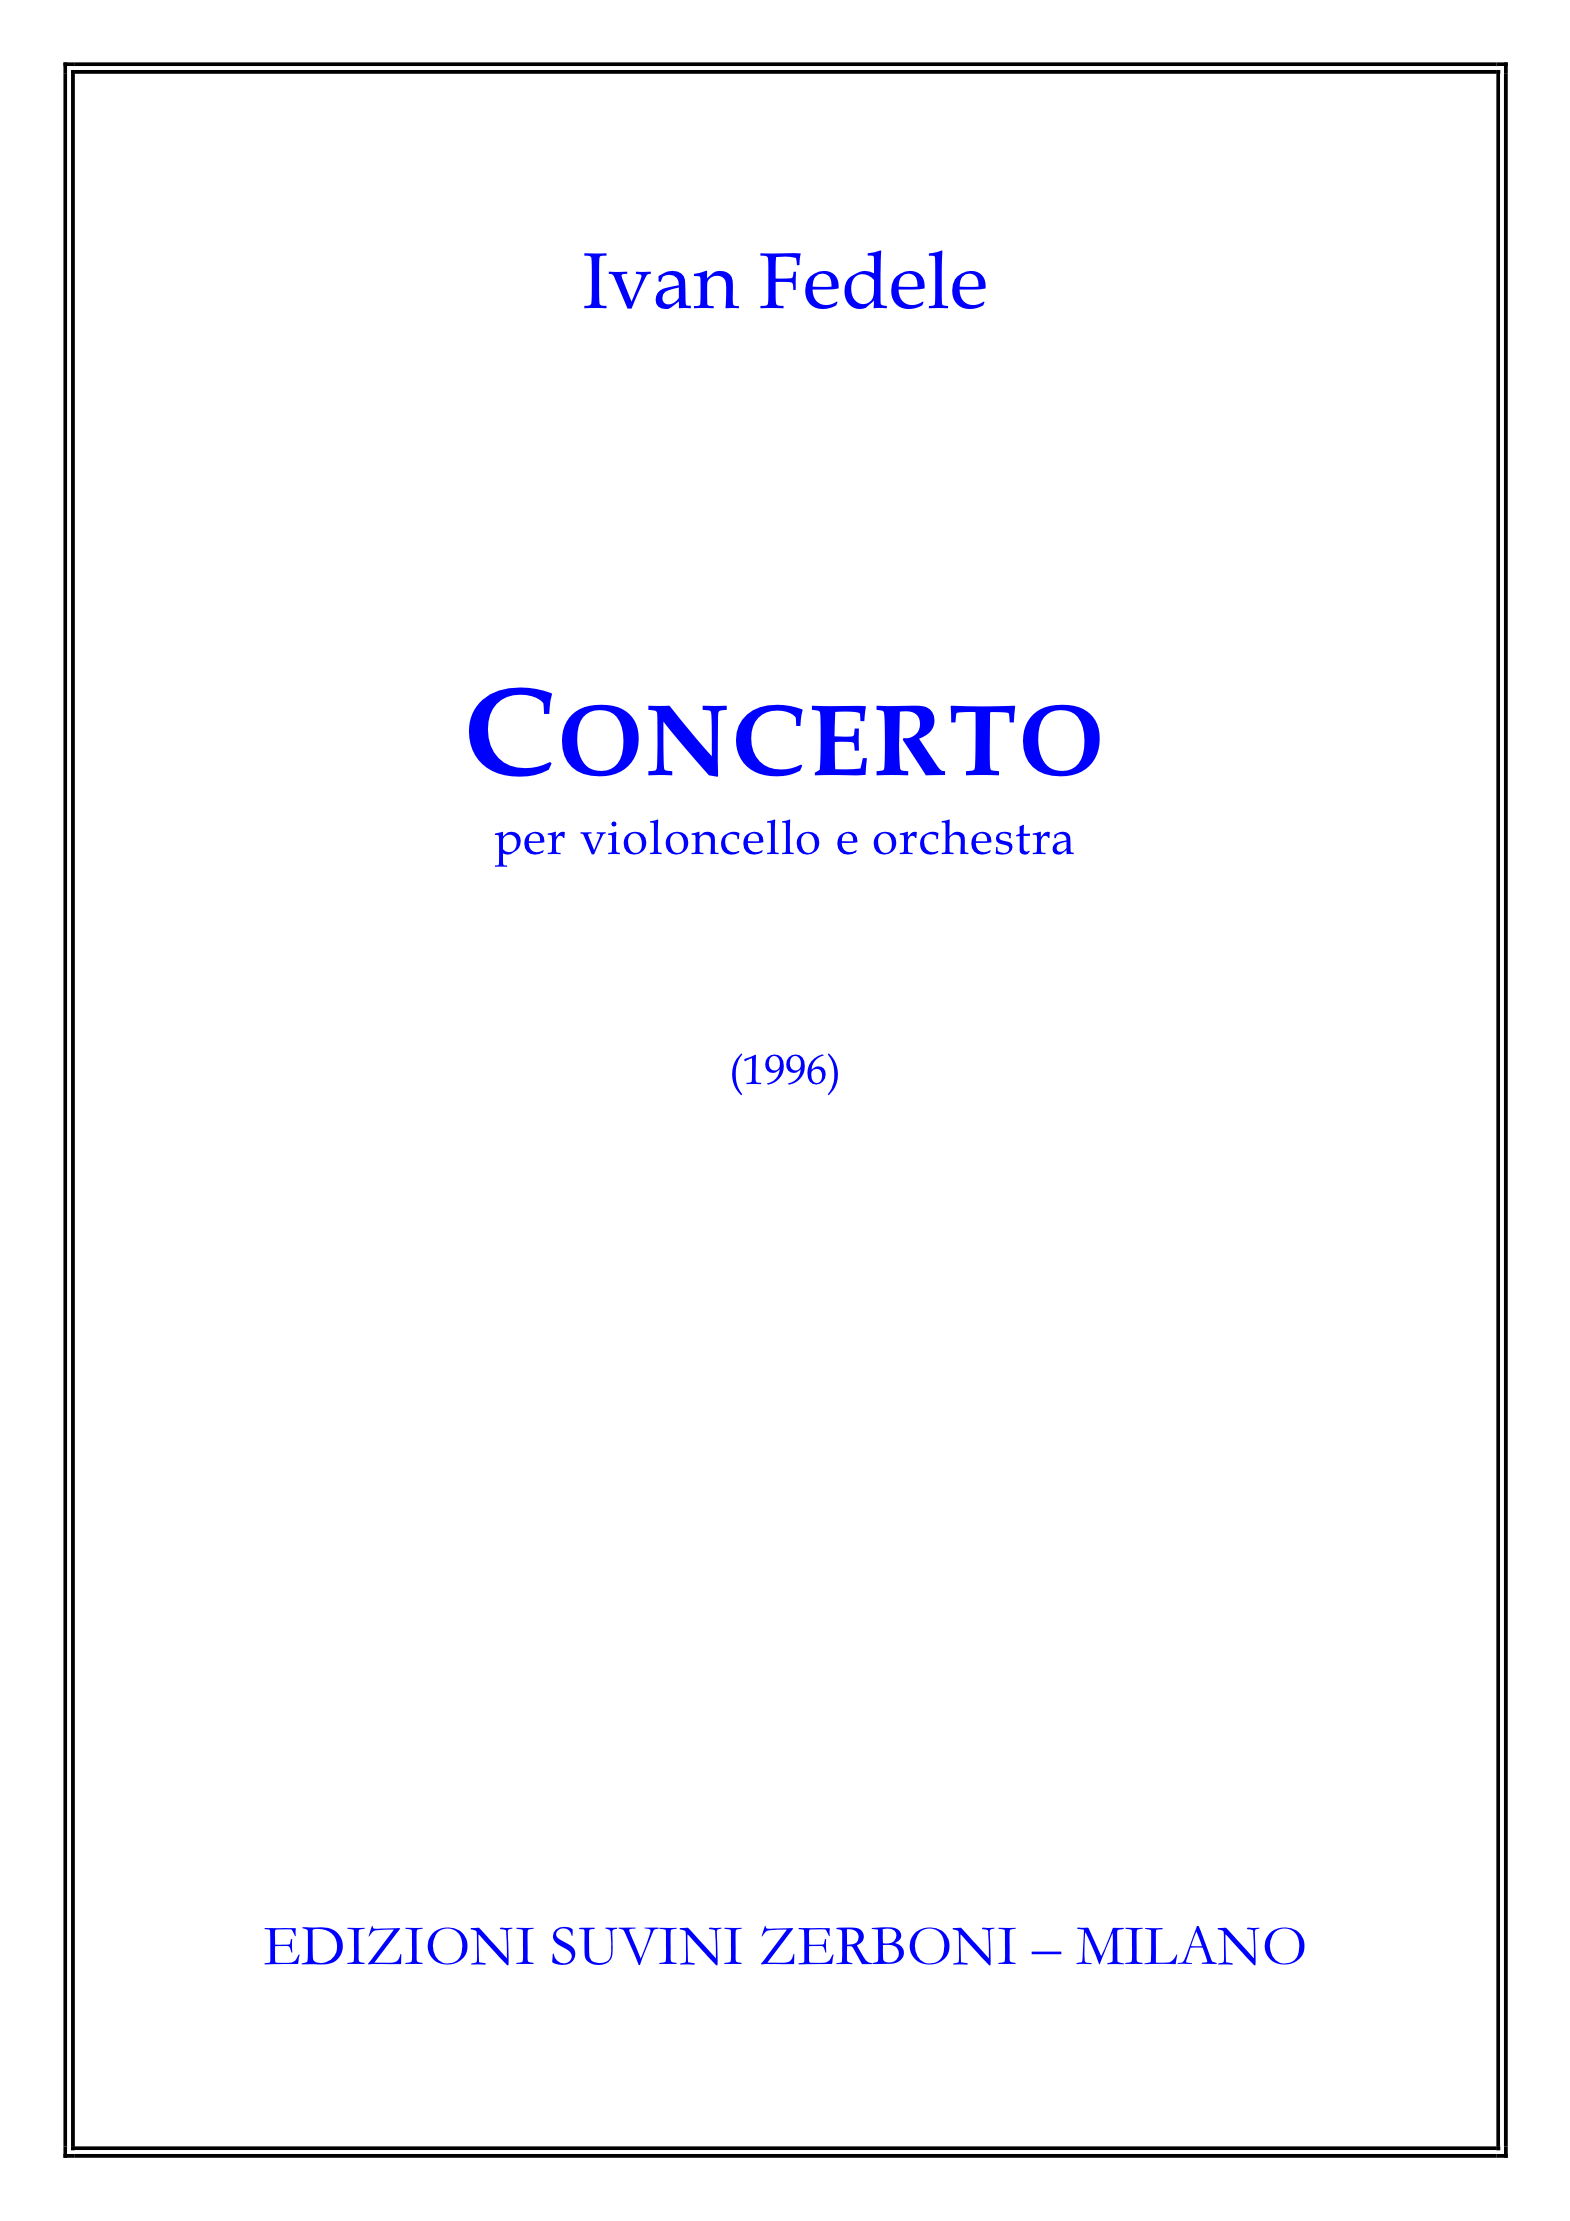 Concerto per violoncello e orchestra_Fedele 1